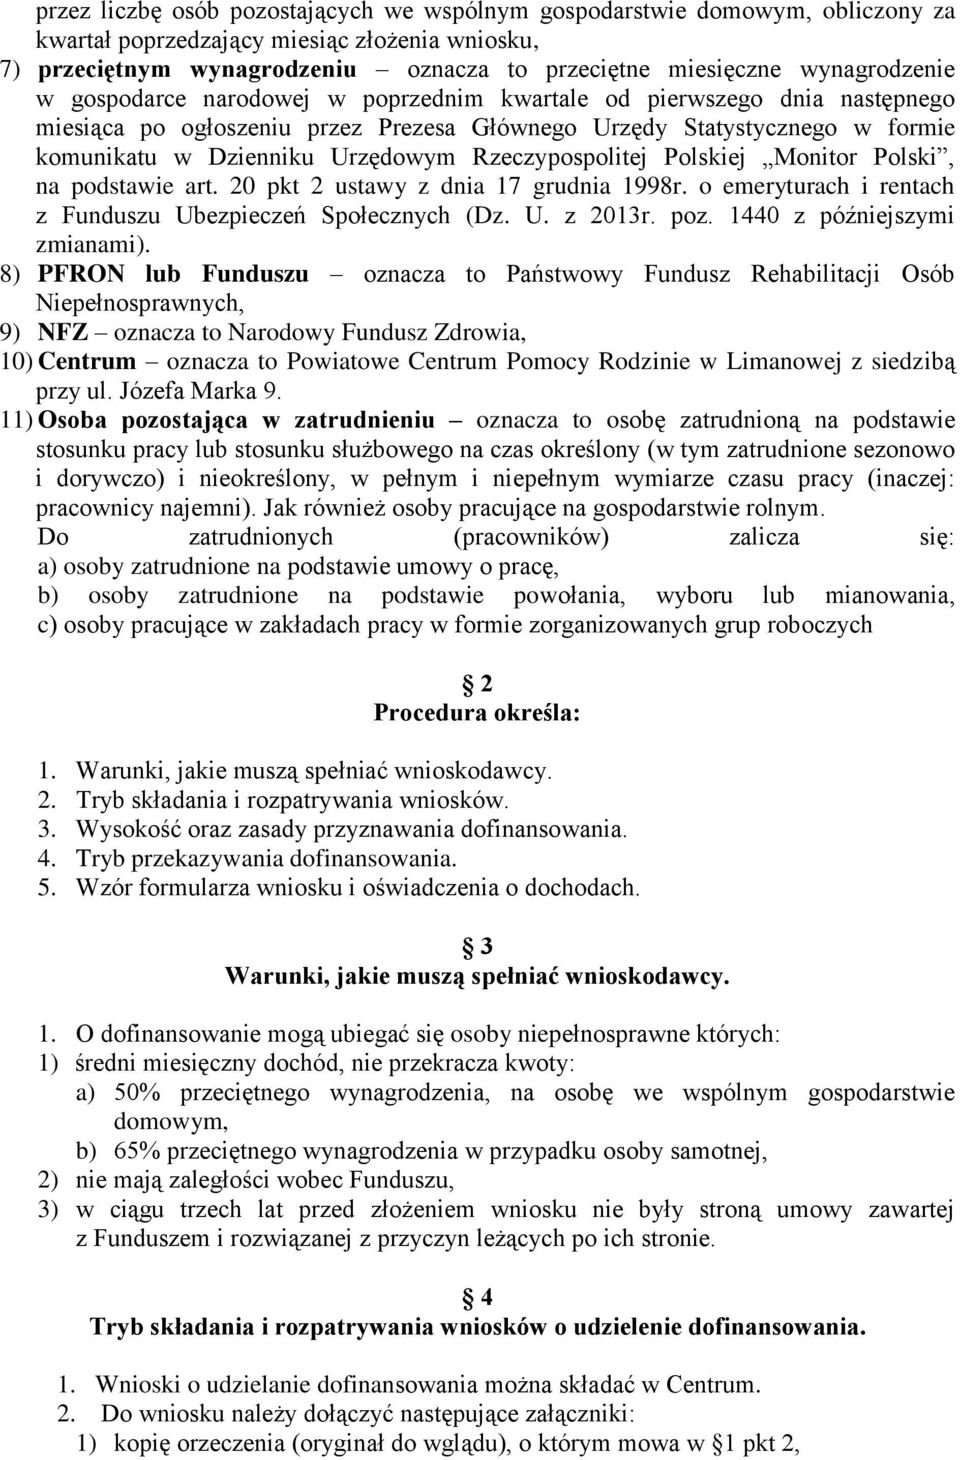 Rzeczypospolitej Polskiej Monitor Polski, na podstawie art. 20 pkt 2 ustawy z dnia 17 grudnia 1998r. o emeryturach i rentach z Funduszu Ubezpieczeń Społecznych (Dz. U. z 2013r. poz.